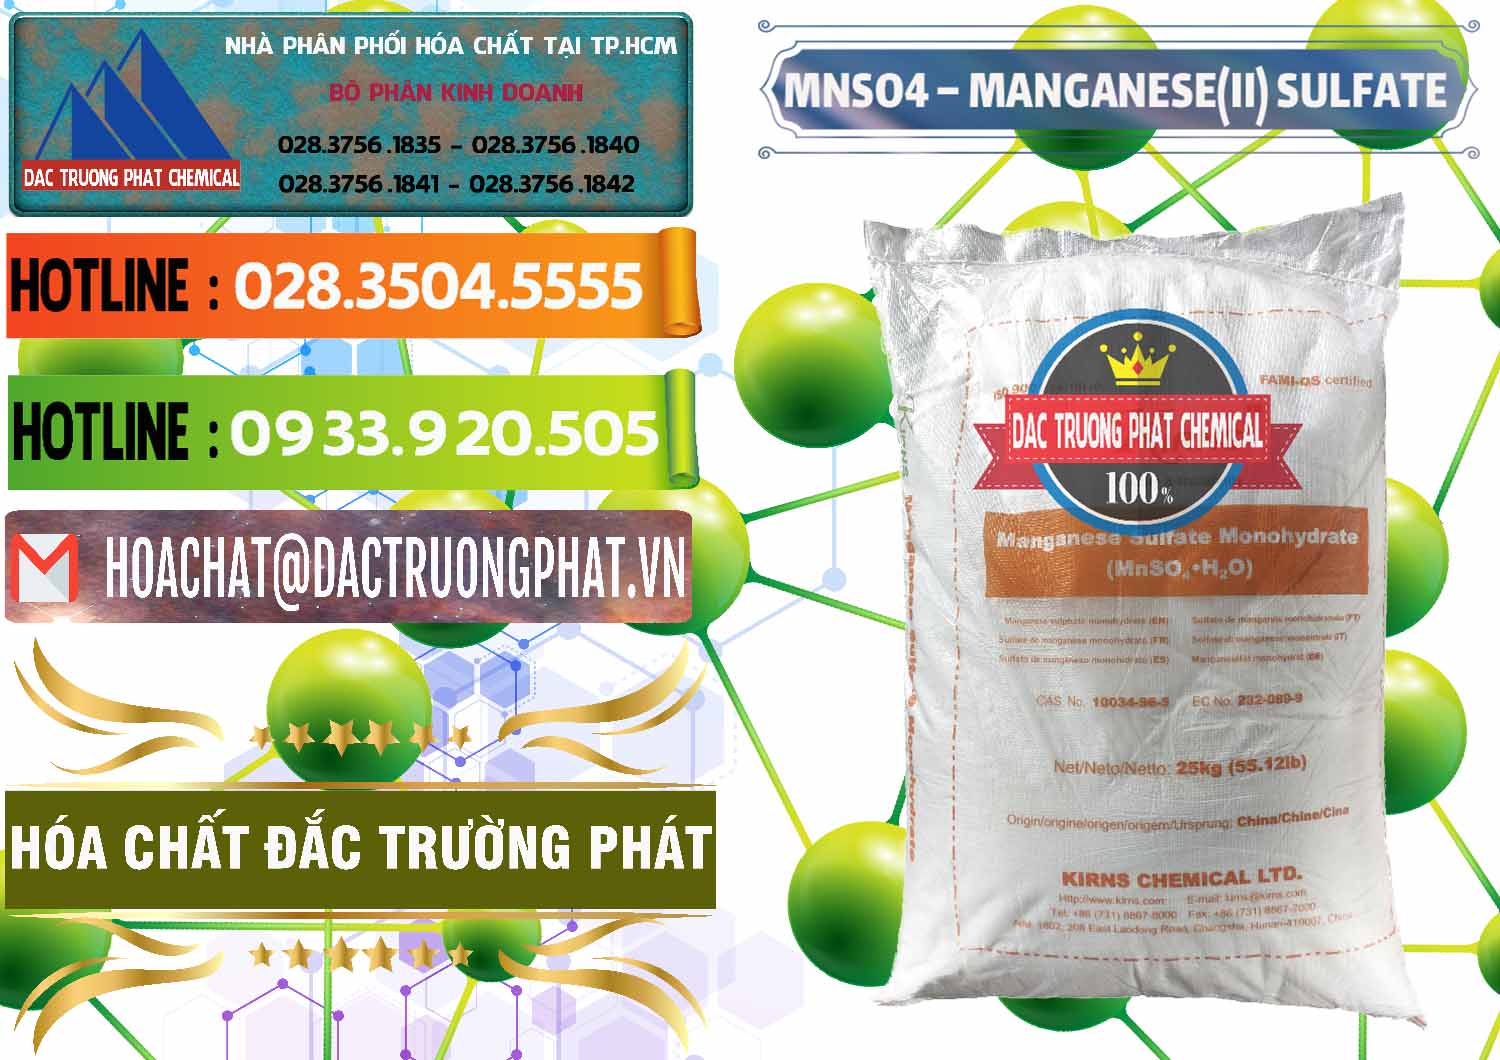 Nơi phân phối và bán MNSO4 – Manganese (II) Sulfate Kirns Trung Quốc China - 0095 - Công ty chuyên cung cấp và bán hóa chất tại TP.HCM - cungcaphoachat.com.vn